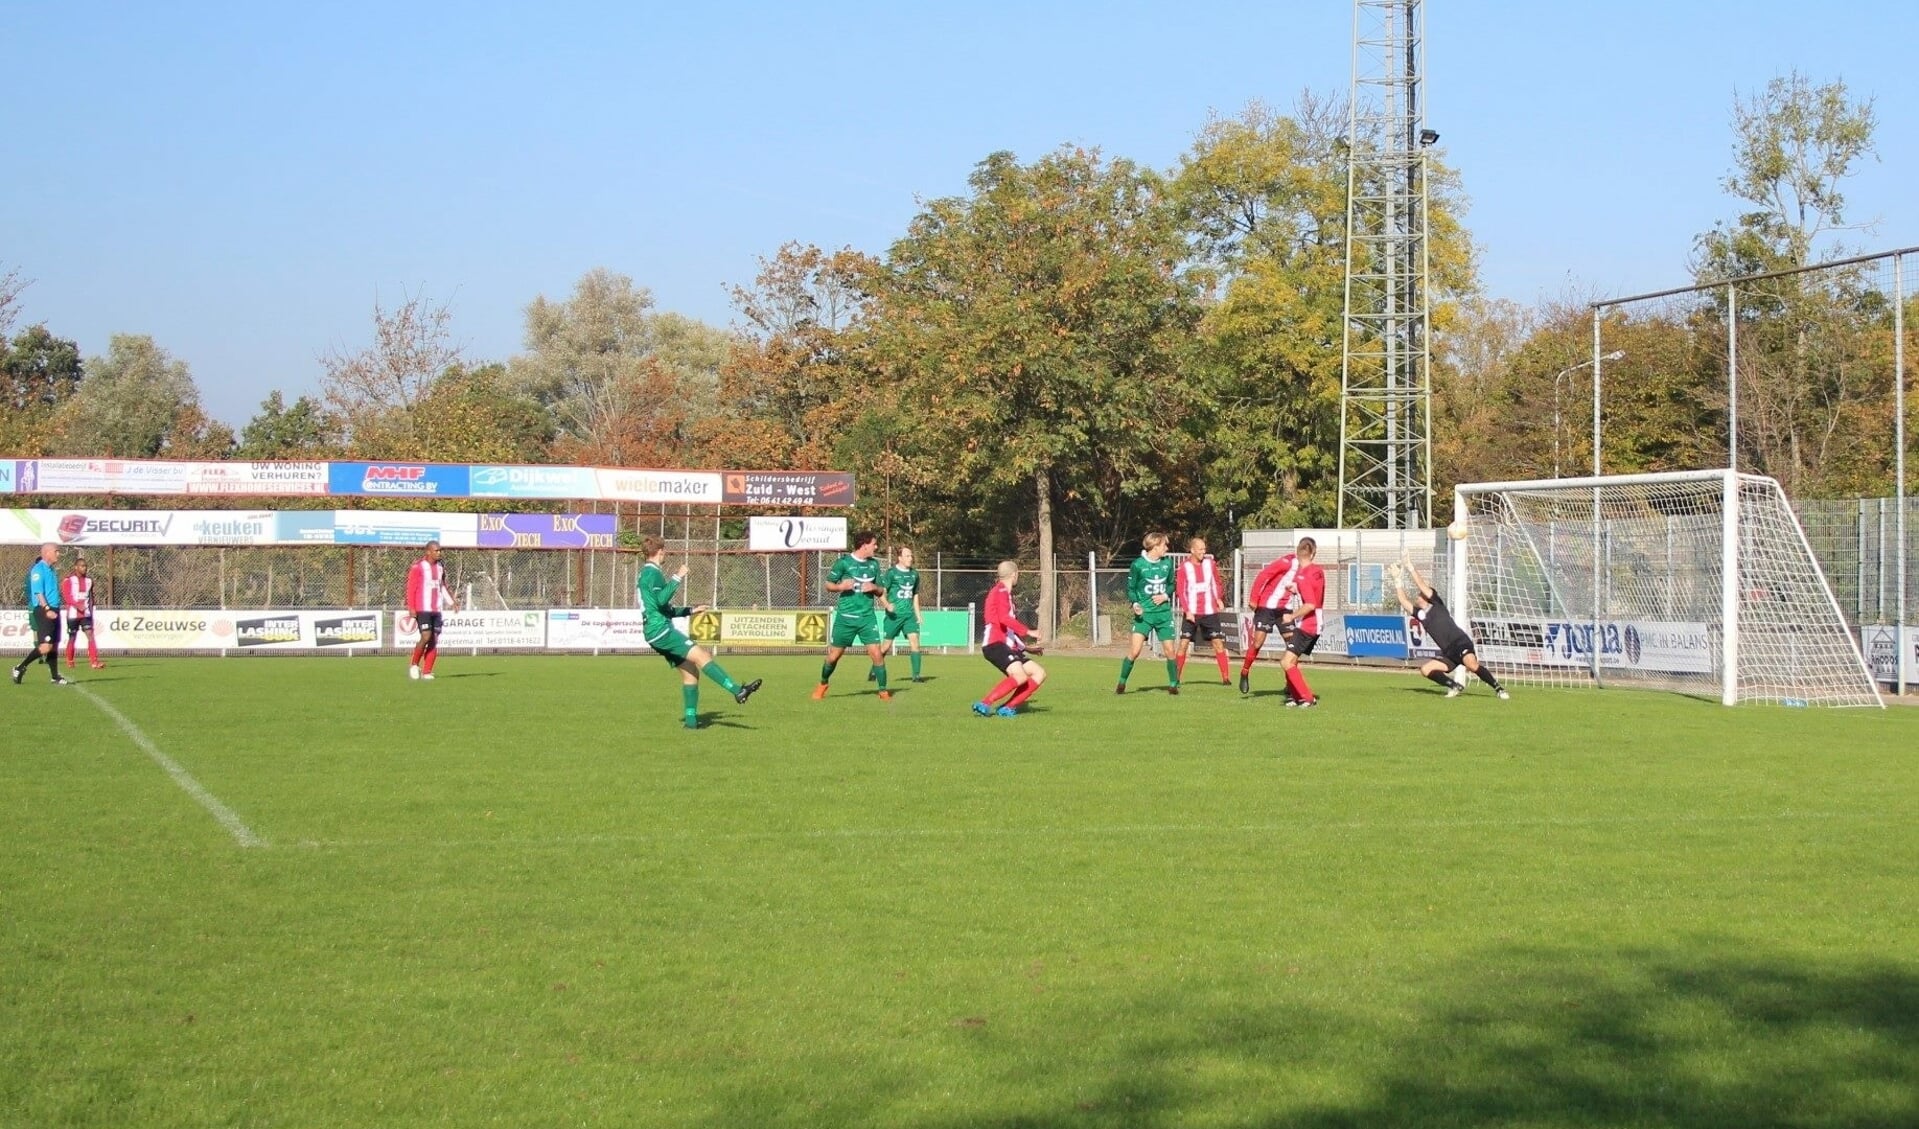 UDI'19 speelde eerder dit seizoen gelijk tegen VC Vlissingen. (foto: UDI'19)